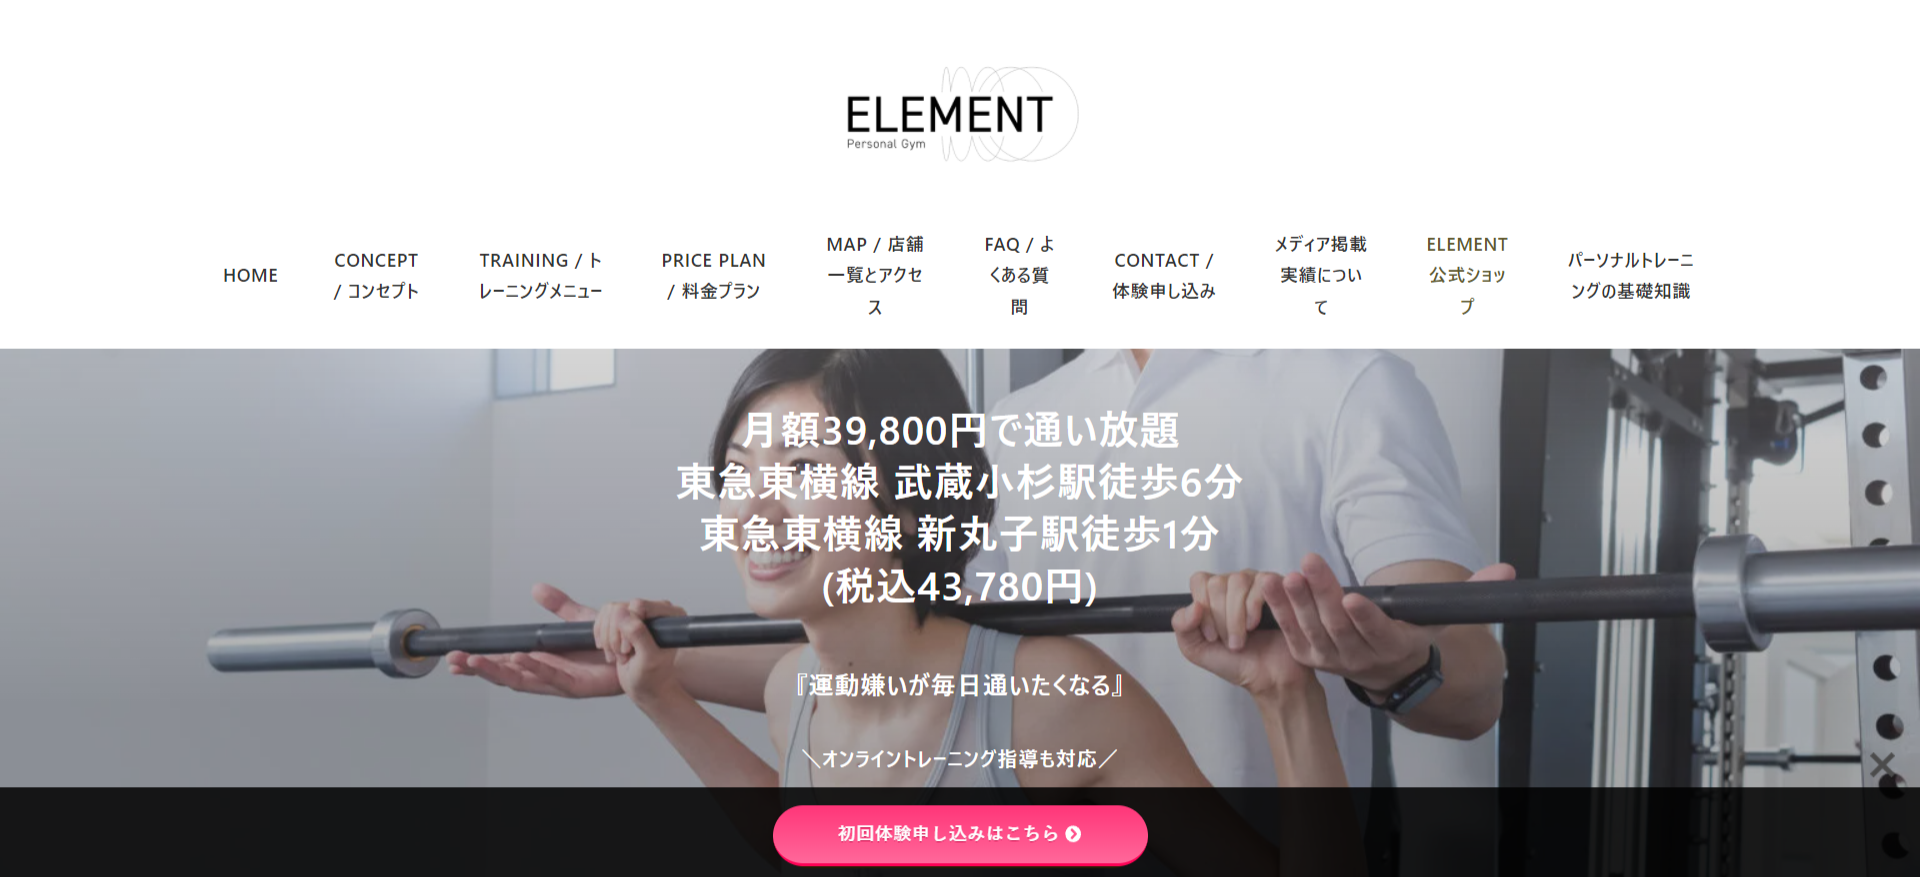 ELEMENT 武蔵小杉店